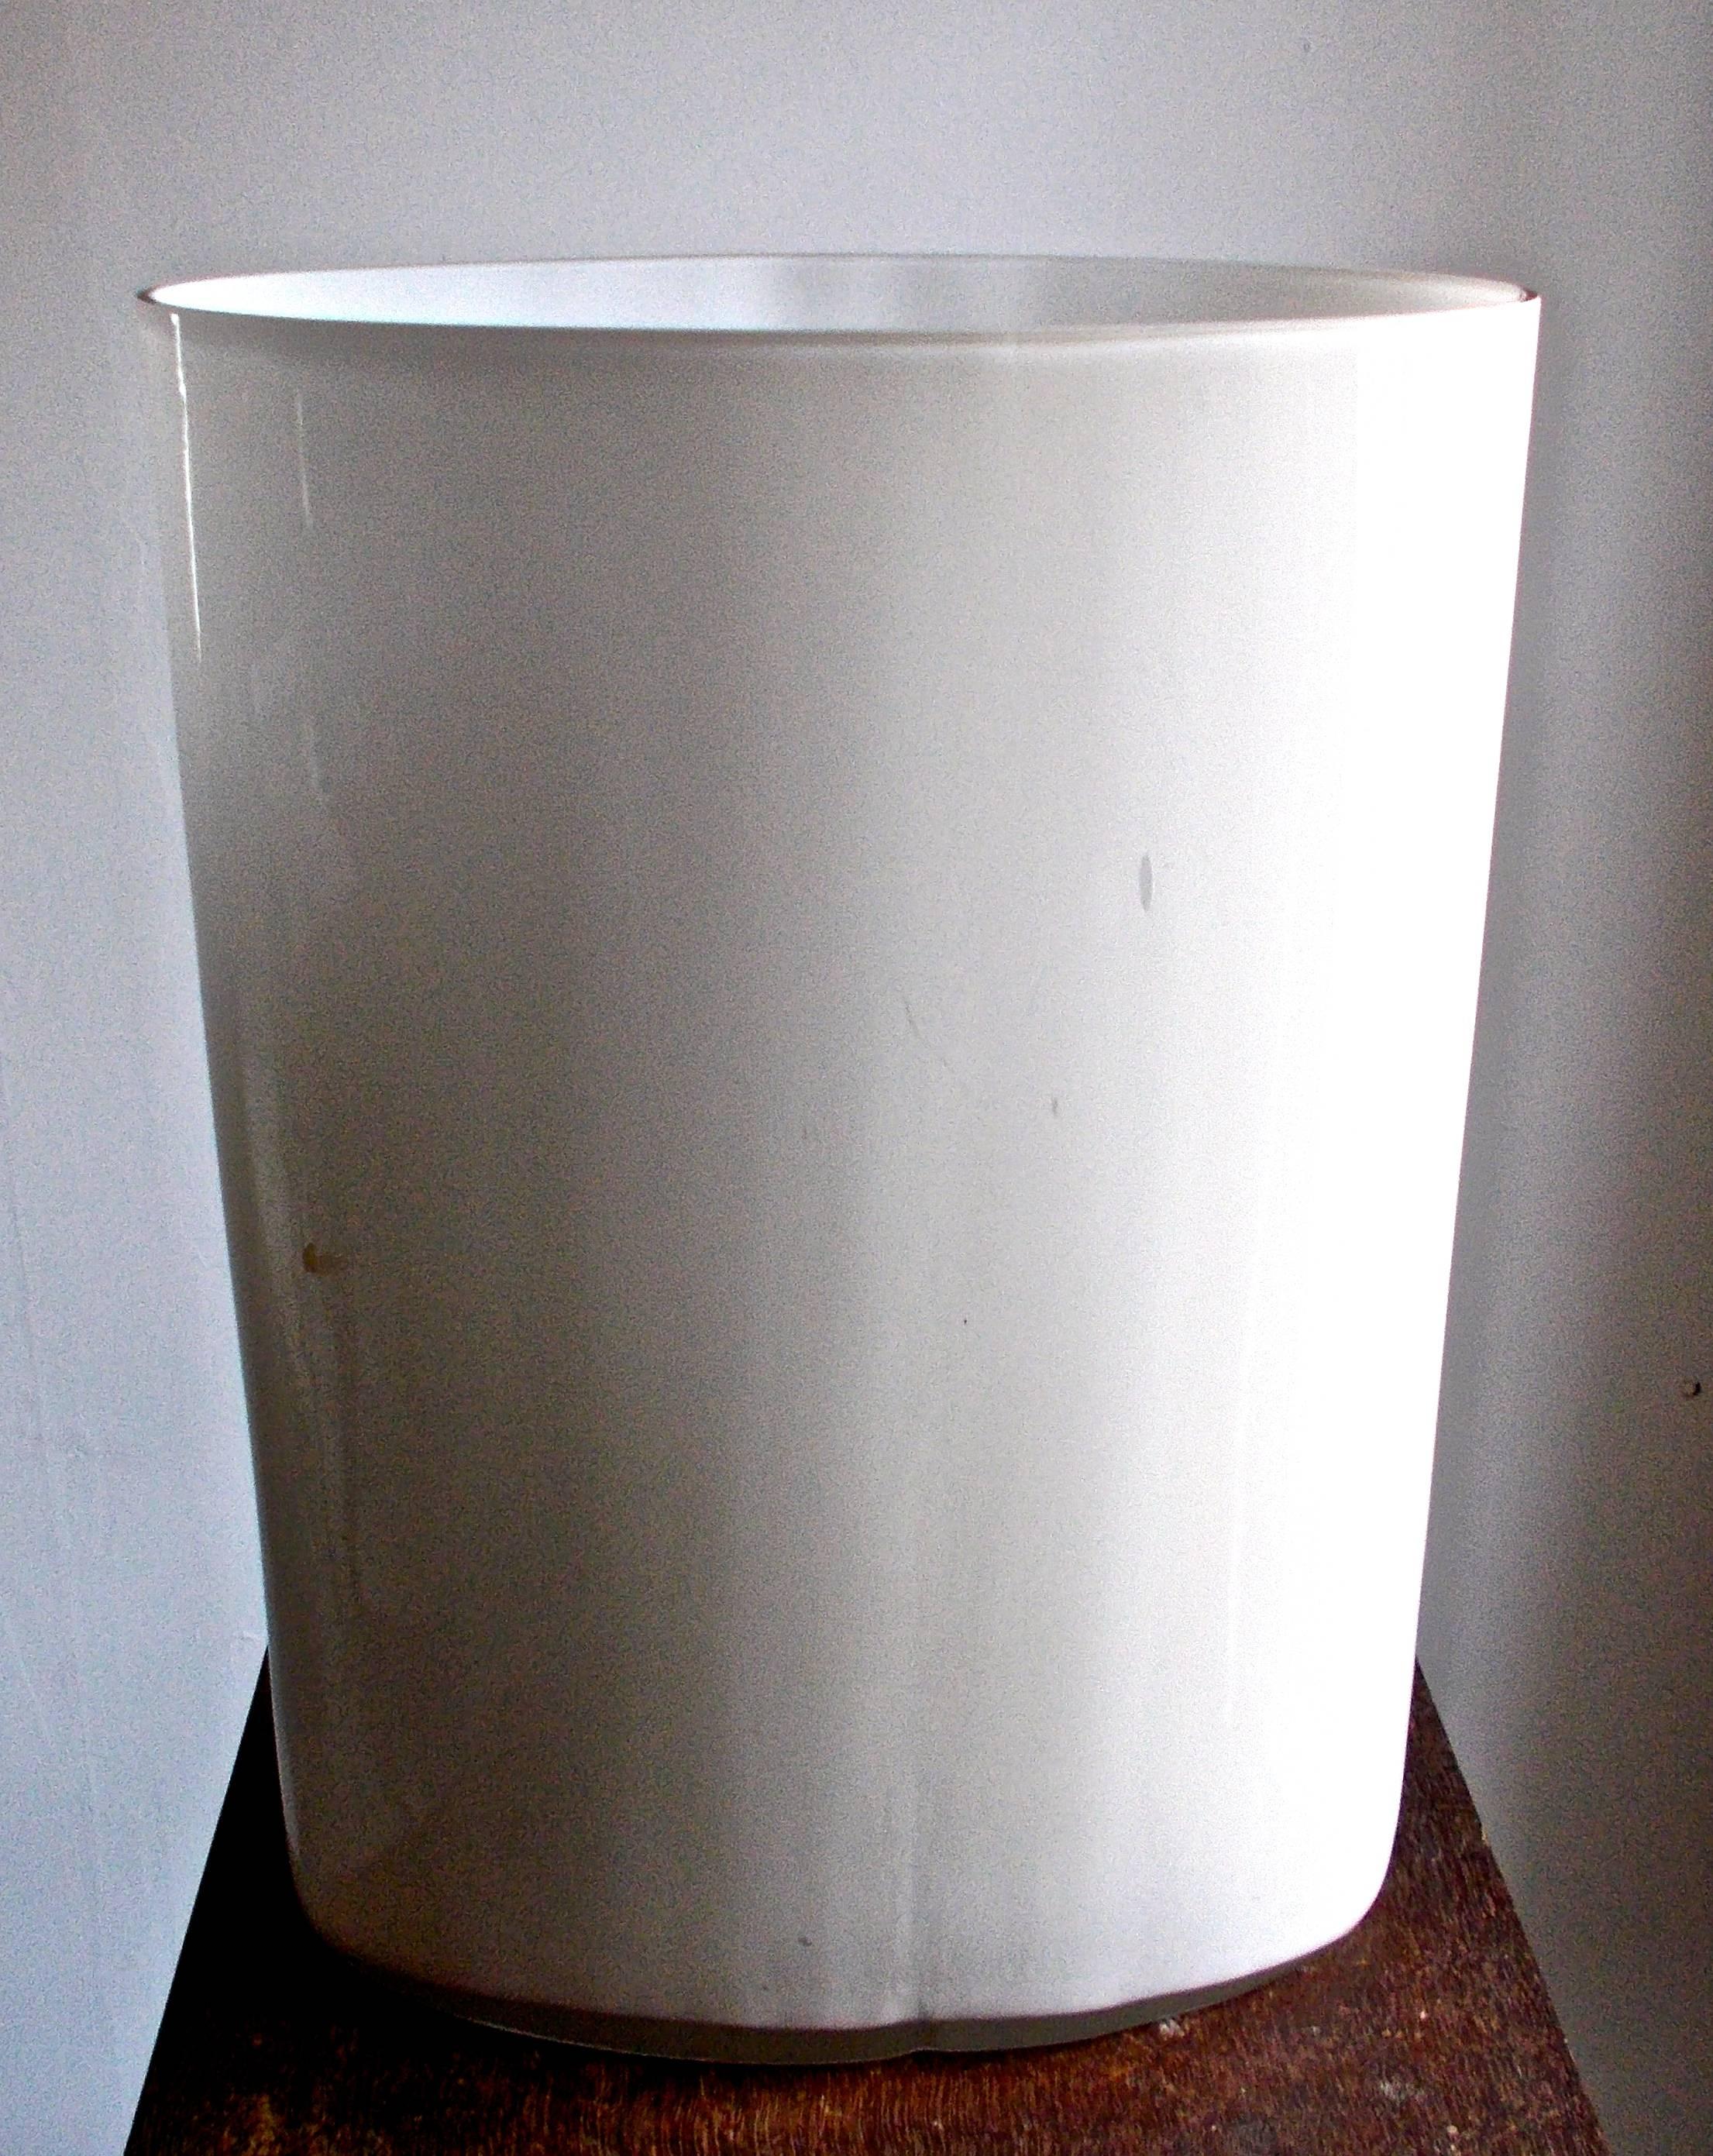 Die größte Version dieser berühmten Form. Undurchsichtiges weißes und klares Glas. Maße: 35 cm. (13 3/4